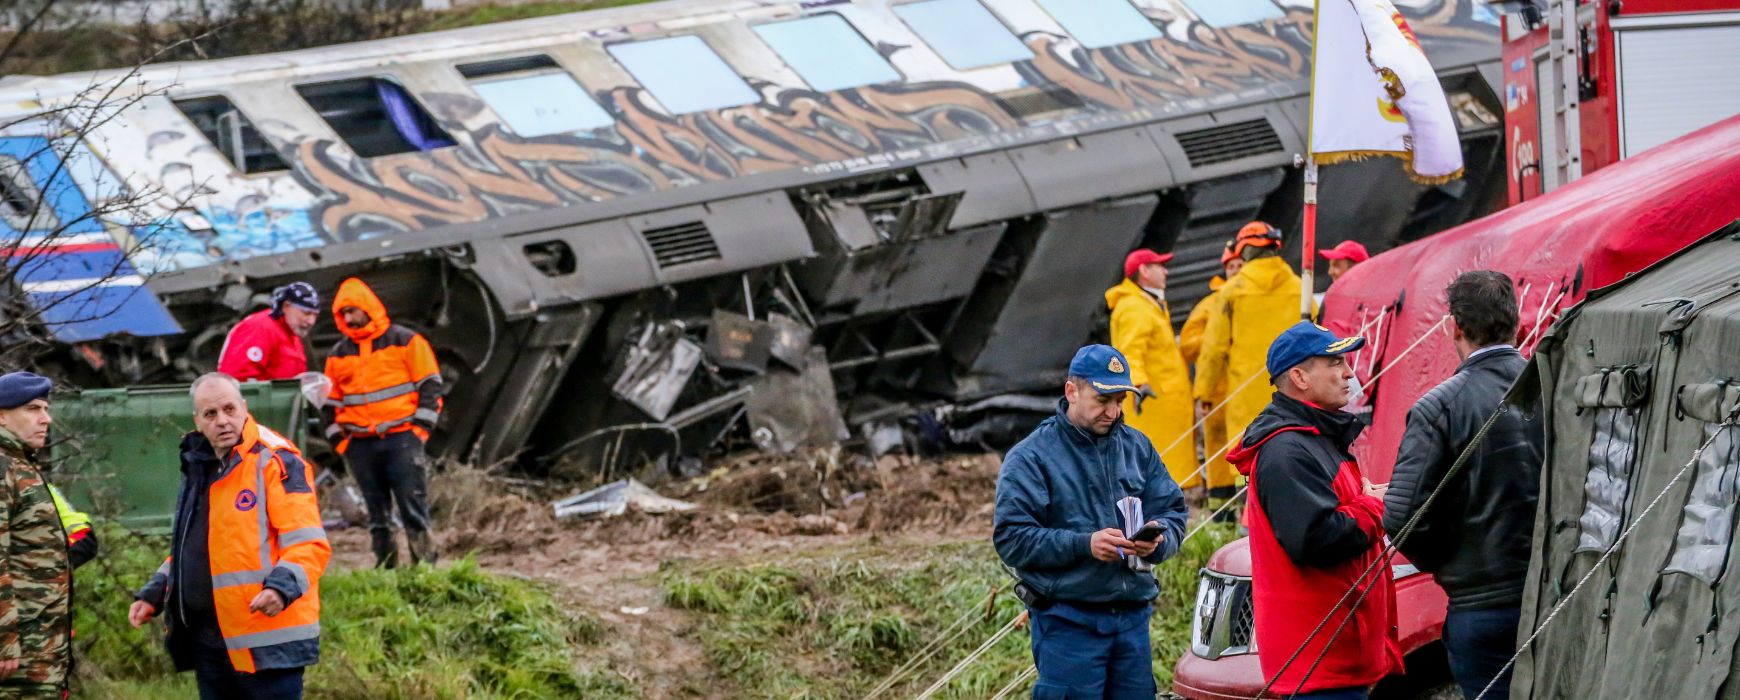 Τέμπη: Πινγκ πονγκ ευθυνών ανάμεσα σε Hellenic Train και ΟΣΕ για την τραγωδία – Δεν λειτουργεί ούτε η ραδιοεπικοινωνία στα τρένα